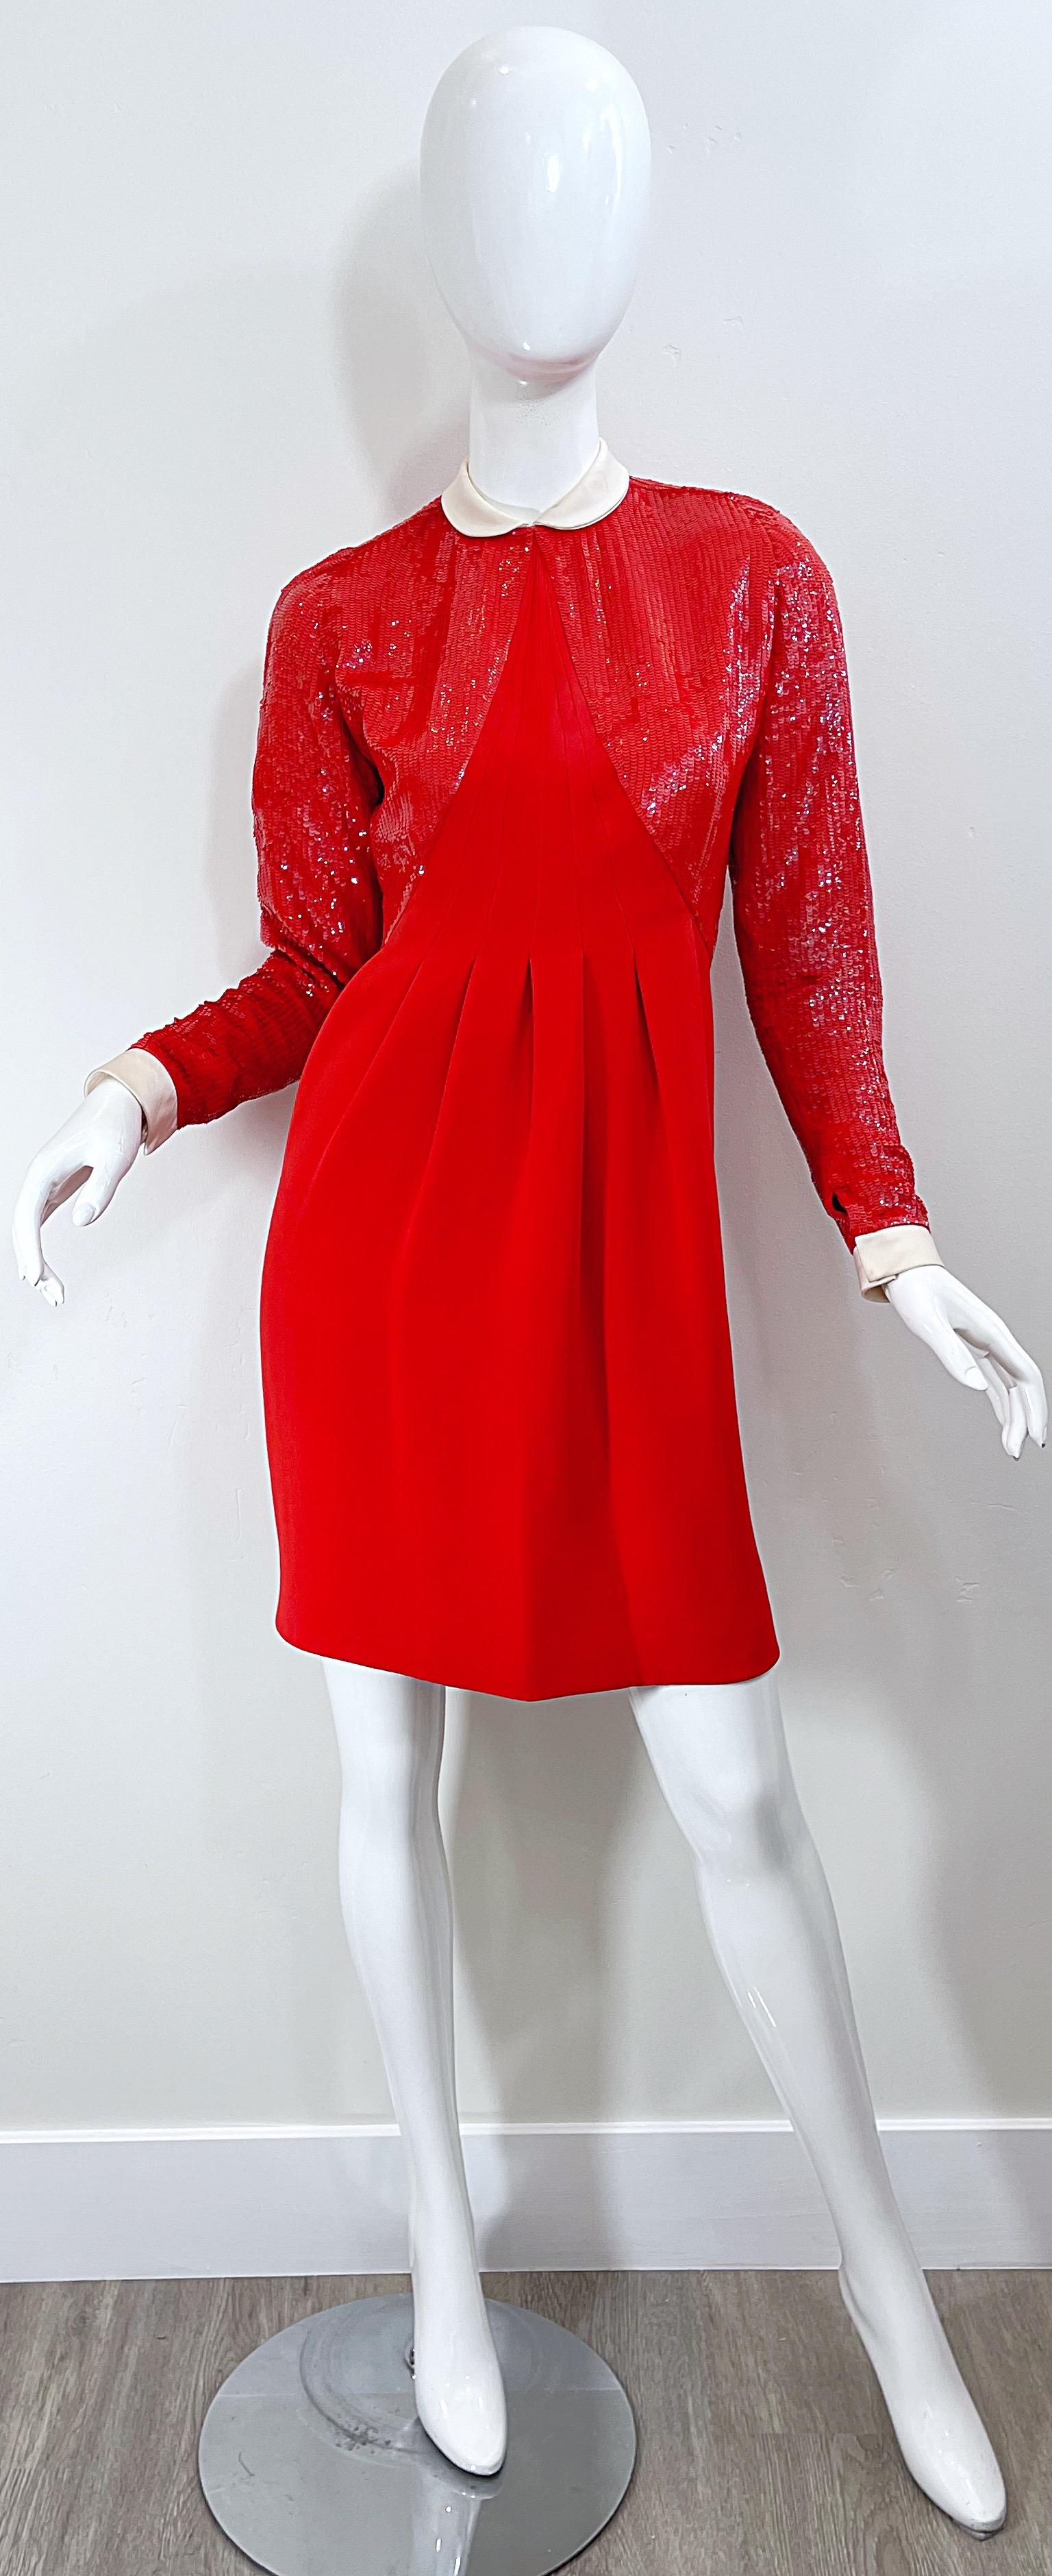 Geoffrey Beene 1980s Lipstick Red Faux Bolero Vintage 80s Tuxedo Dress  For Sale 9